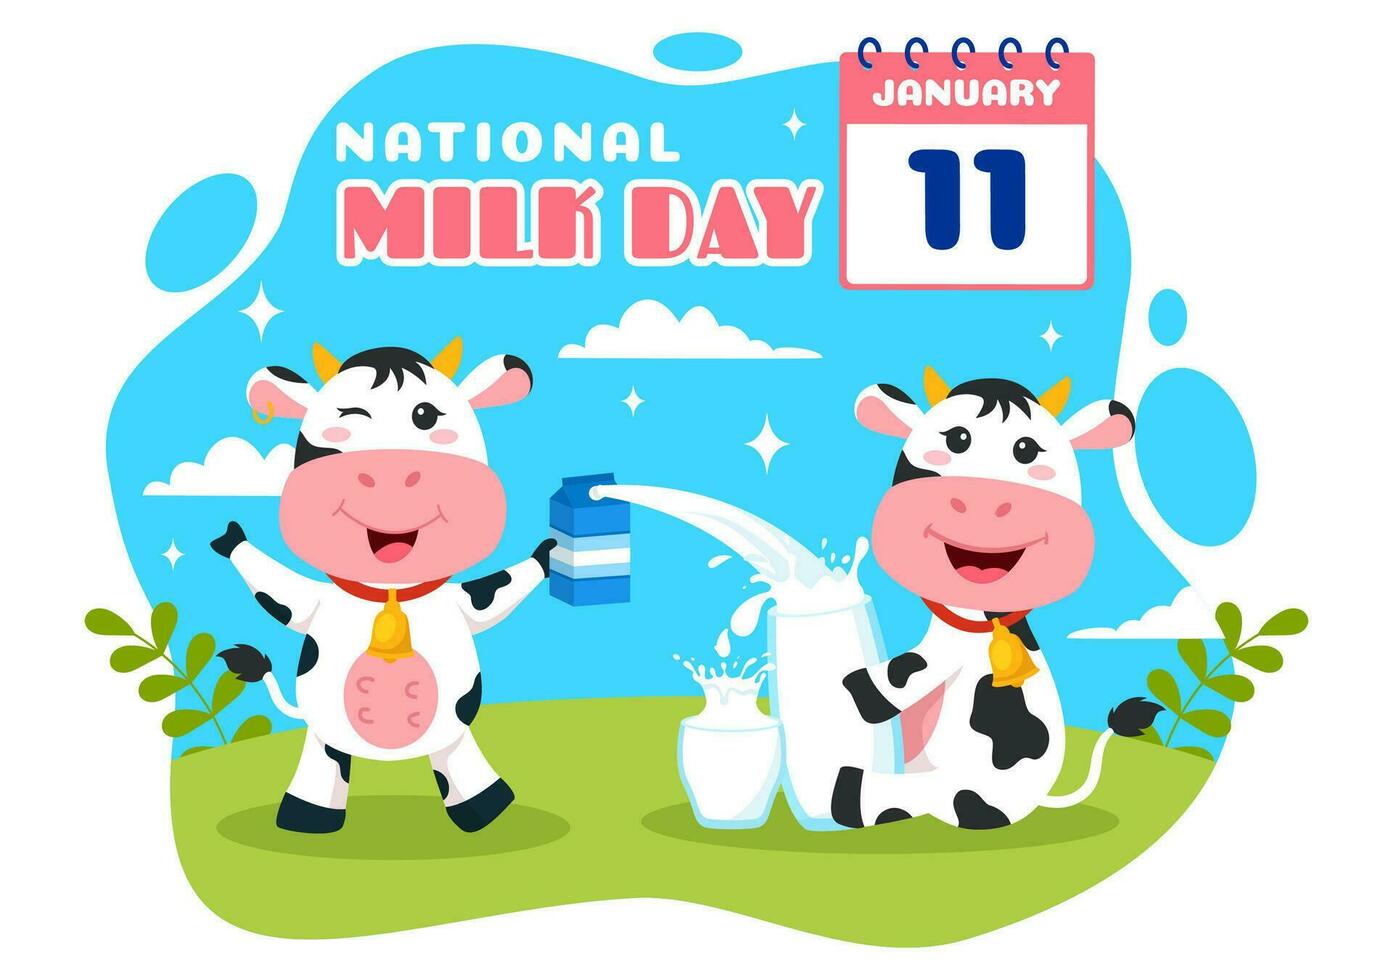 nationale Lait journée vecteur illustration sur 11 janvier avec les laits les boissons et vache pour affiche ou atterrissage page dans vacances fête dessin animé Contexte